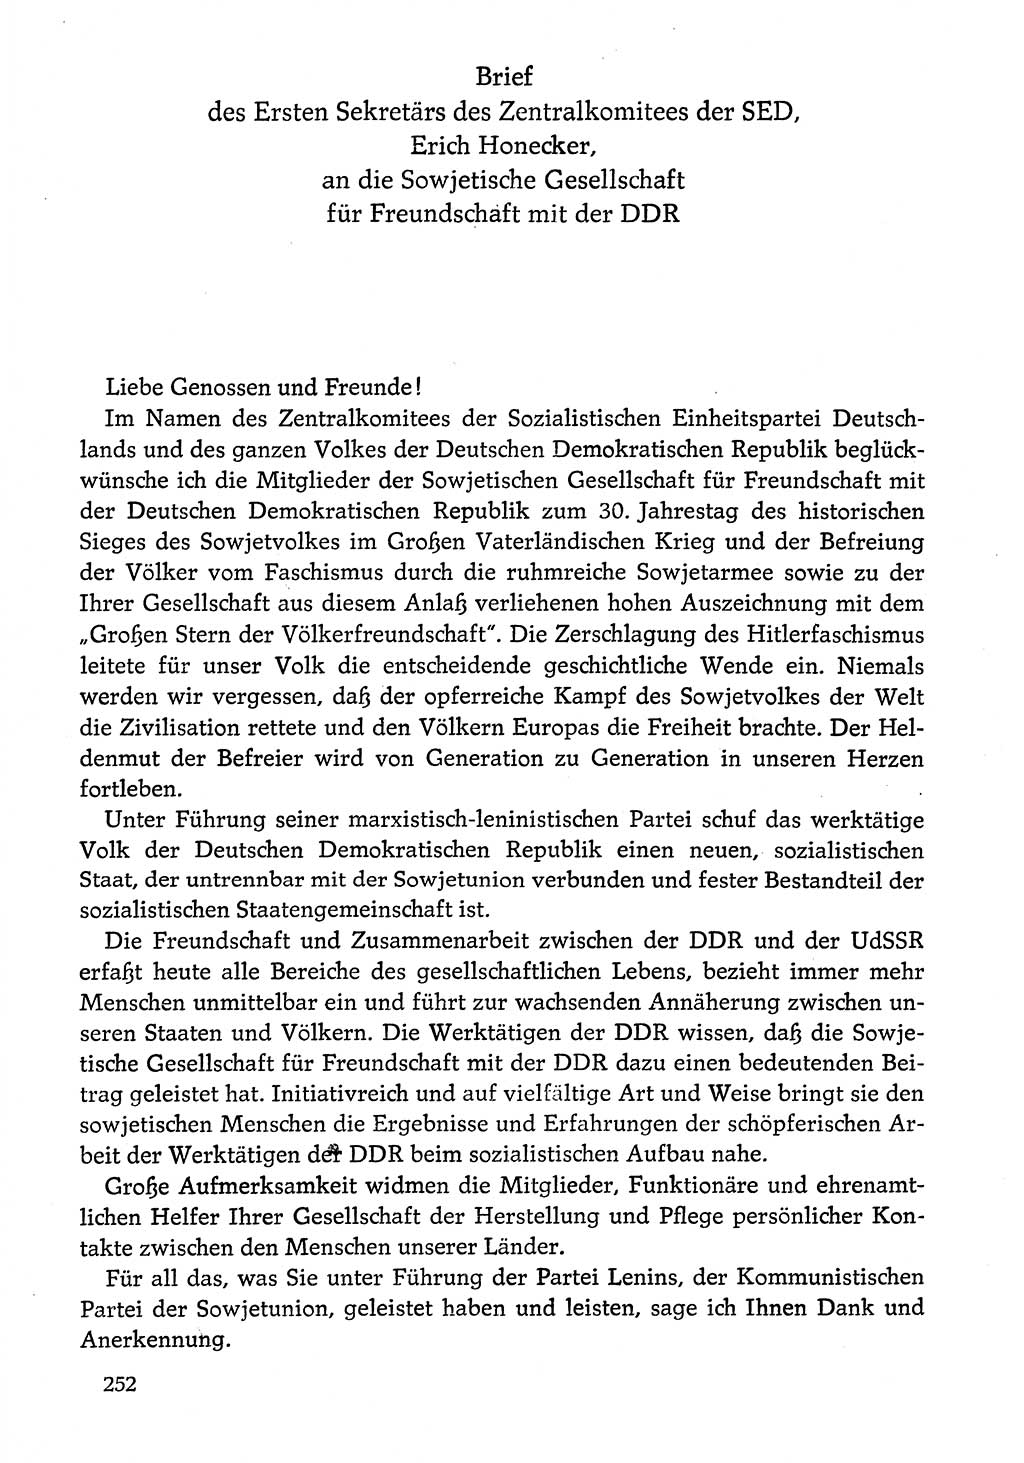 Dokumente der Sozialistischen Einheitspartei Deutschlands (SED) [Deutsche Demokratische Republik (DDR)] 1974-1975, Seite 252 (Dok. SED DDR 1978, Bd. ⅩⅤ, S. 252)